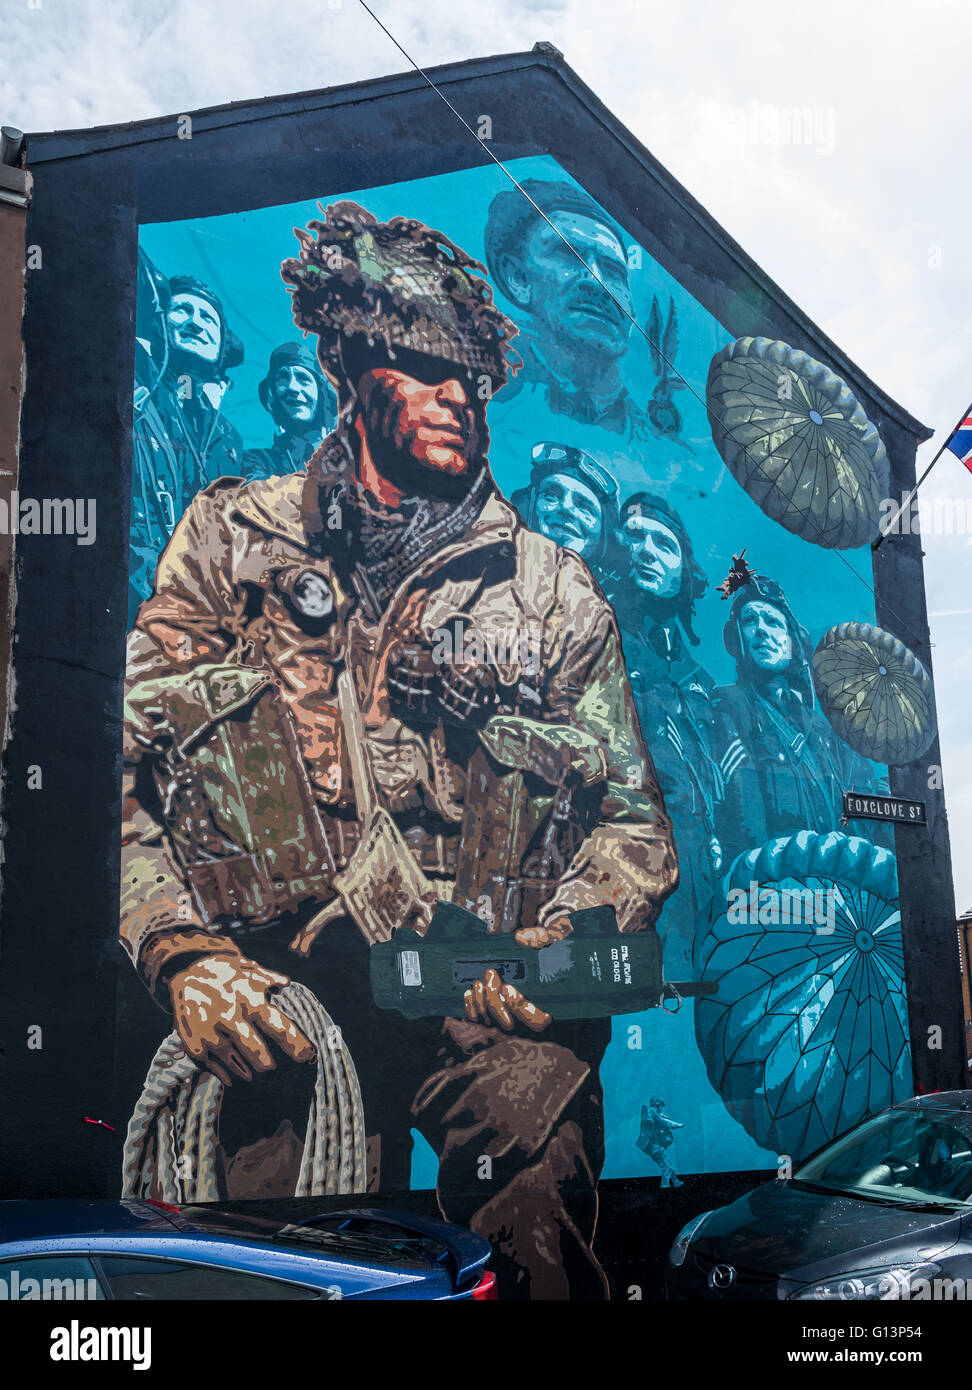 De nouvelles forces armées britanniques d'Irlande du Nord memorial peinture murale représentant un soldat et des pilotes de la RAF dans l'Est de Belfast Banque D'Images